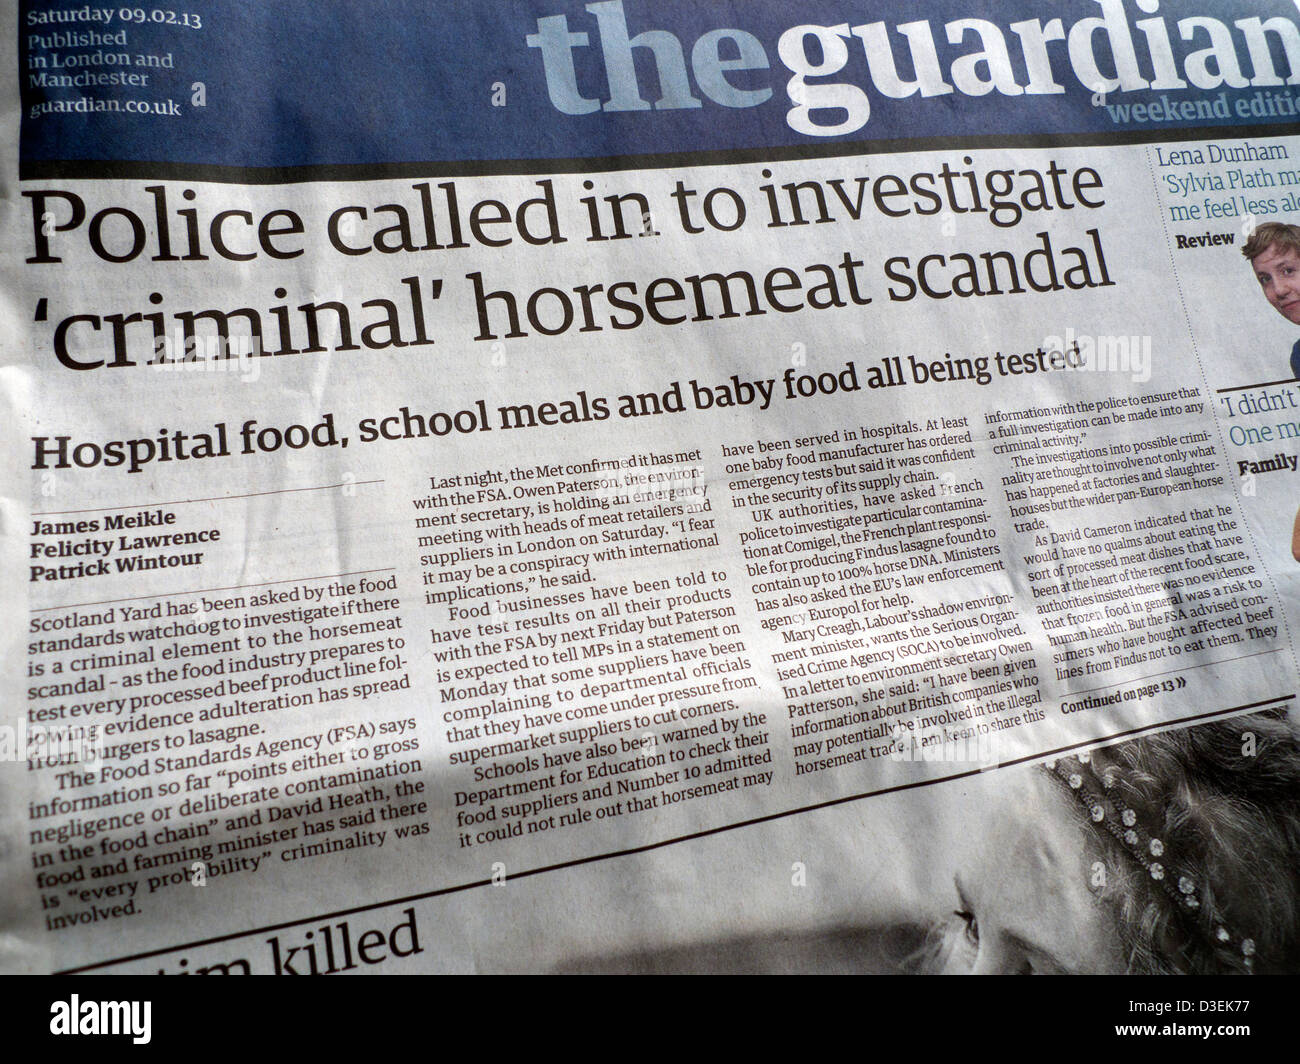 Le indagini della polizia in carne equina scandalo titoli di giornale sul lato anteriore della pagina del quotidiano Guardian 09.02.13 London REGNO UNITO Foto Stock